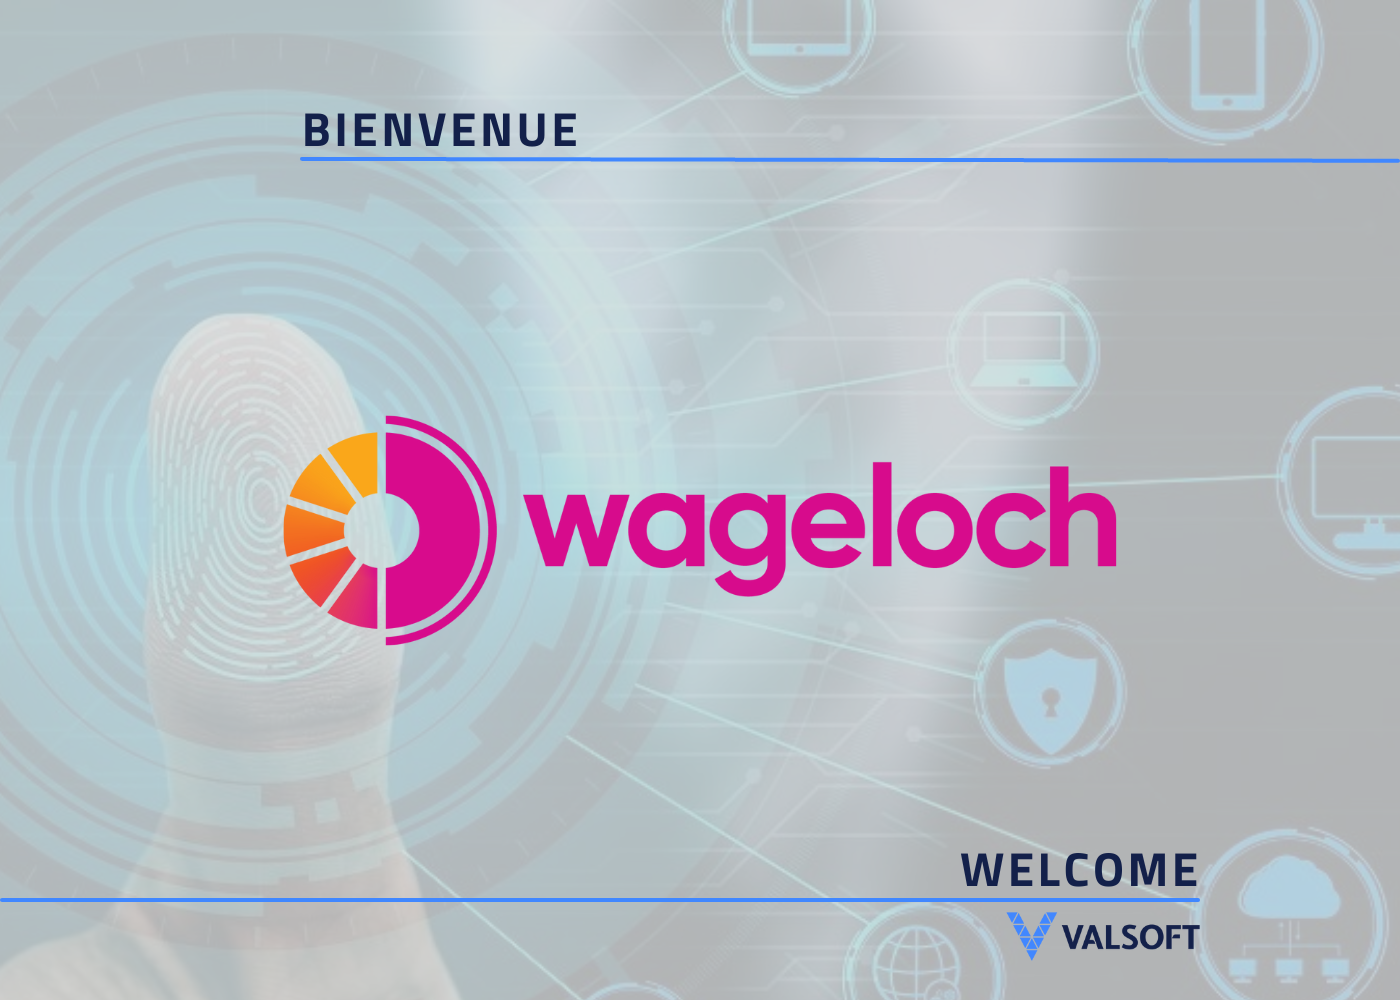 Wageloch welcome our verticals